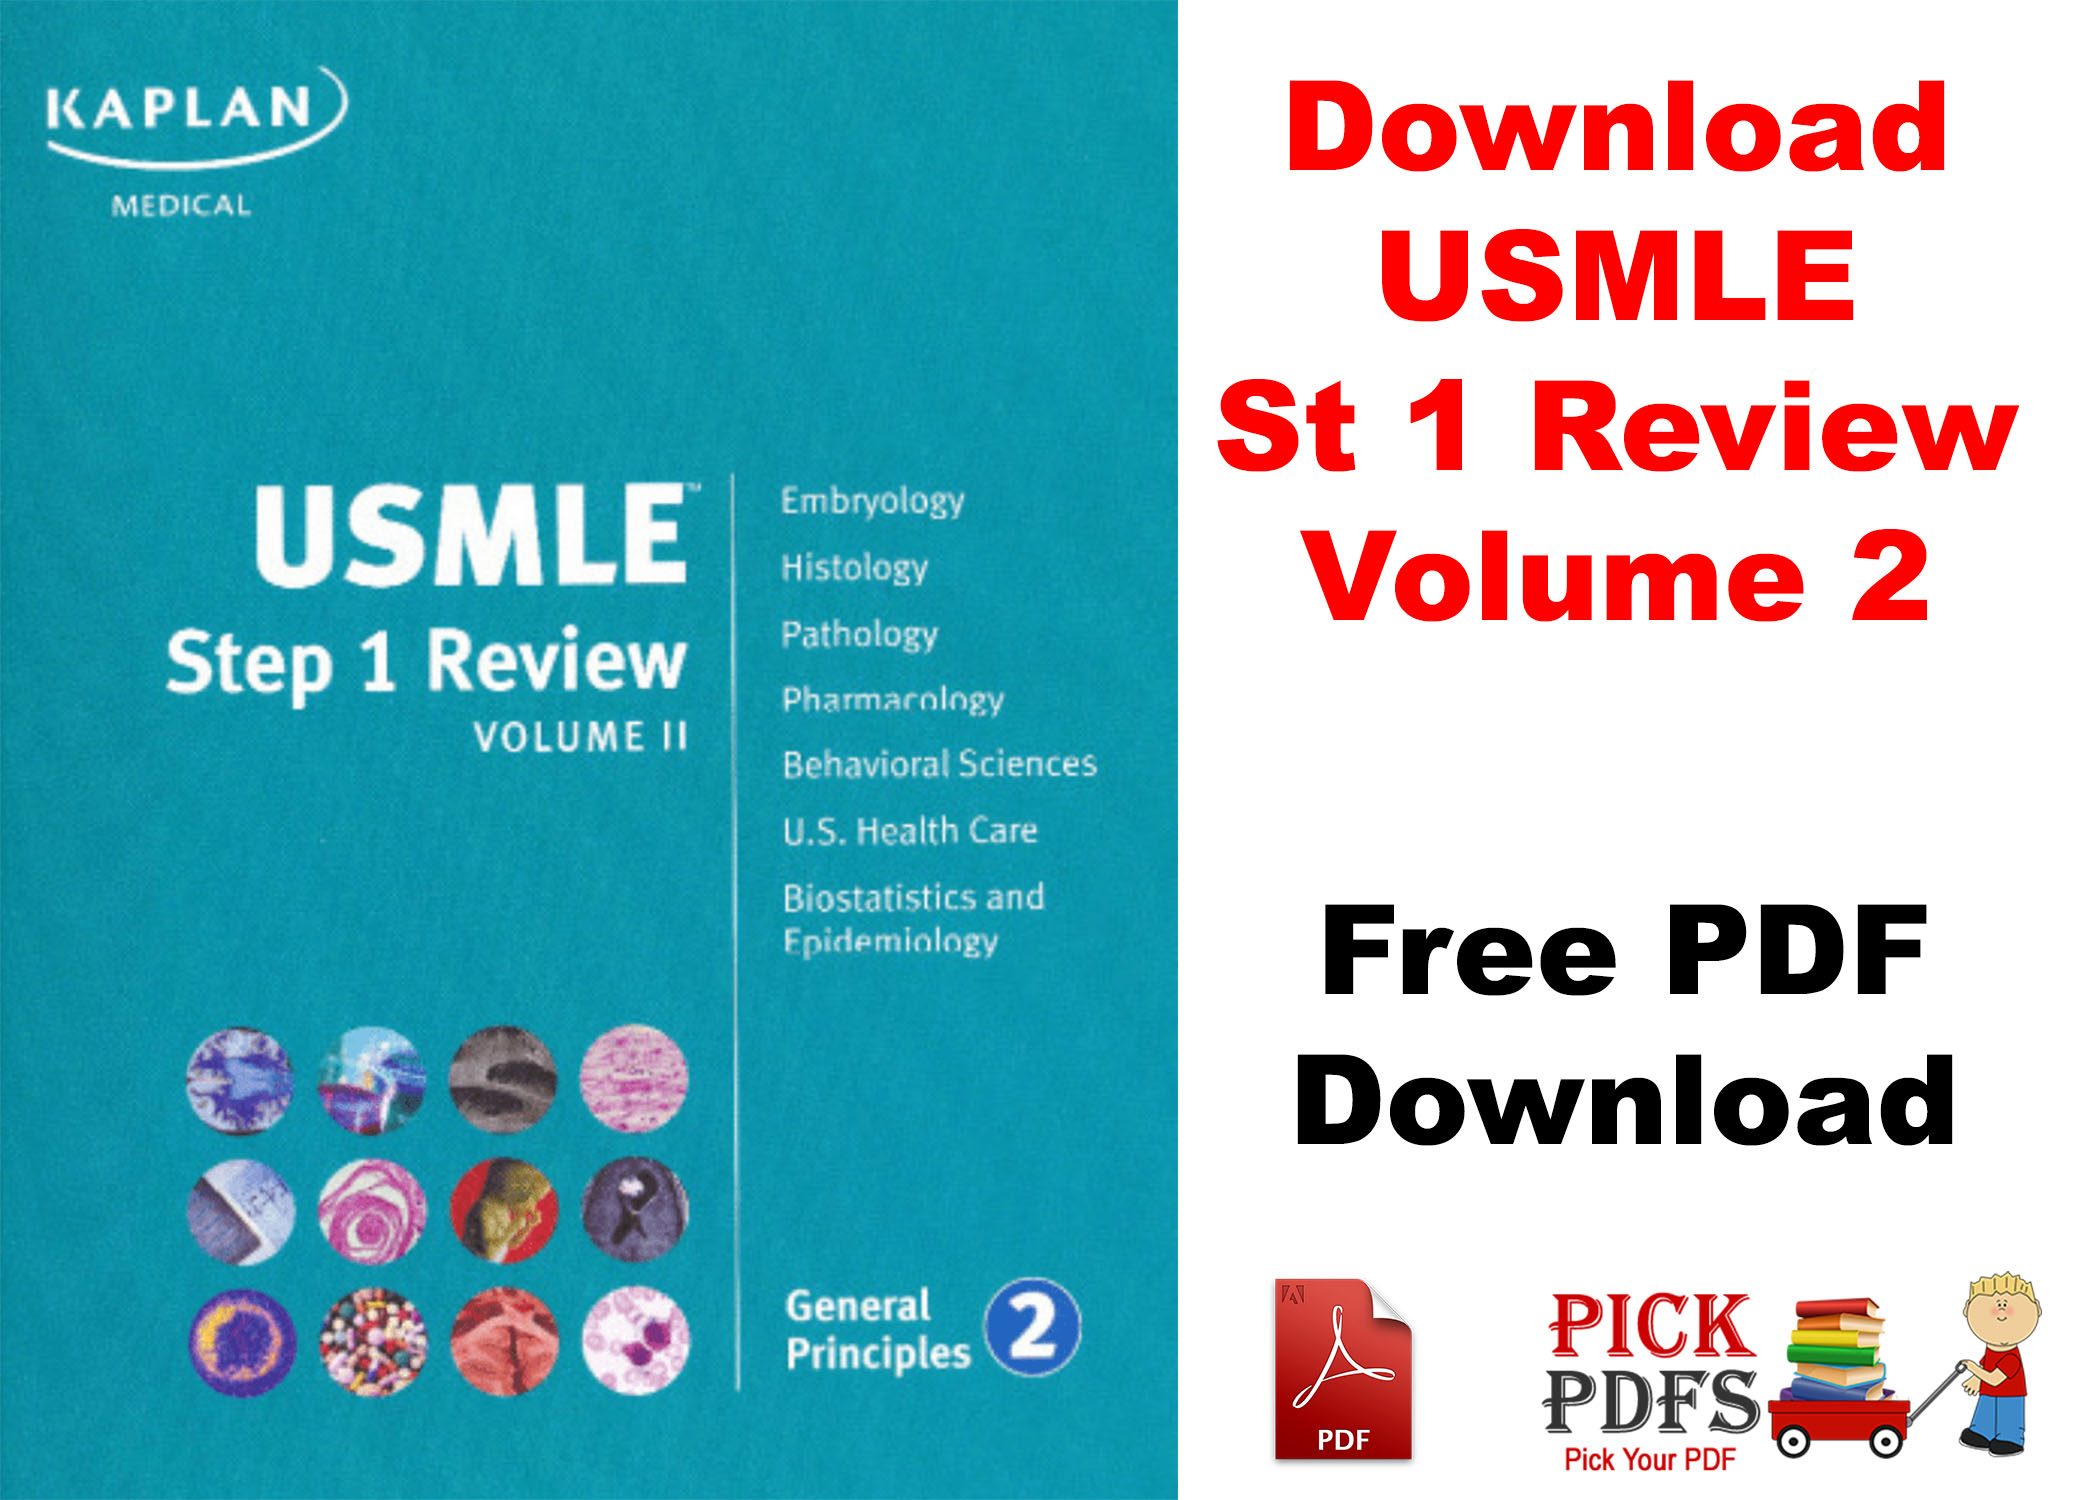 kaplan usmle step 1 review pdf free